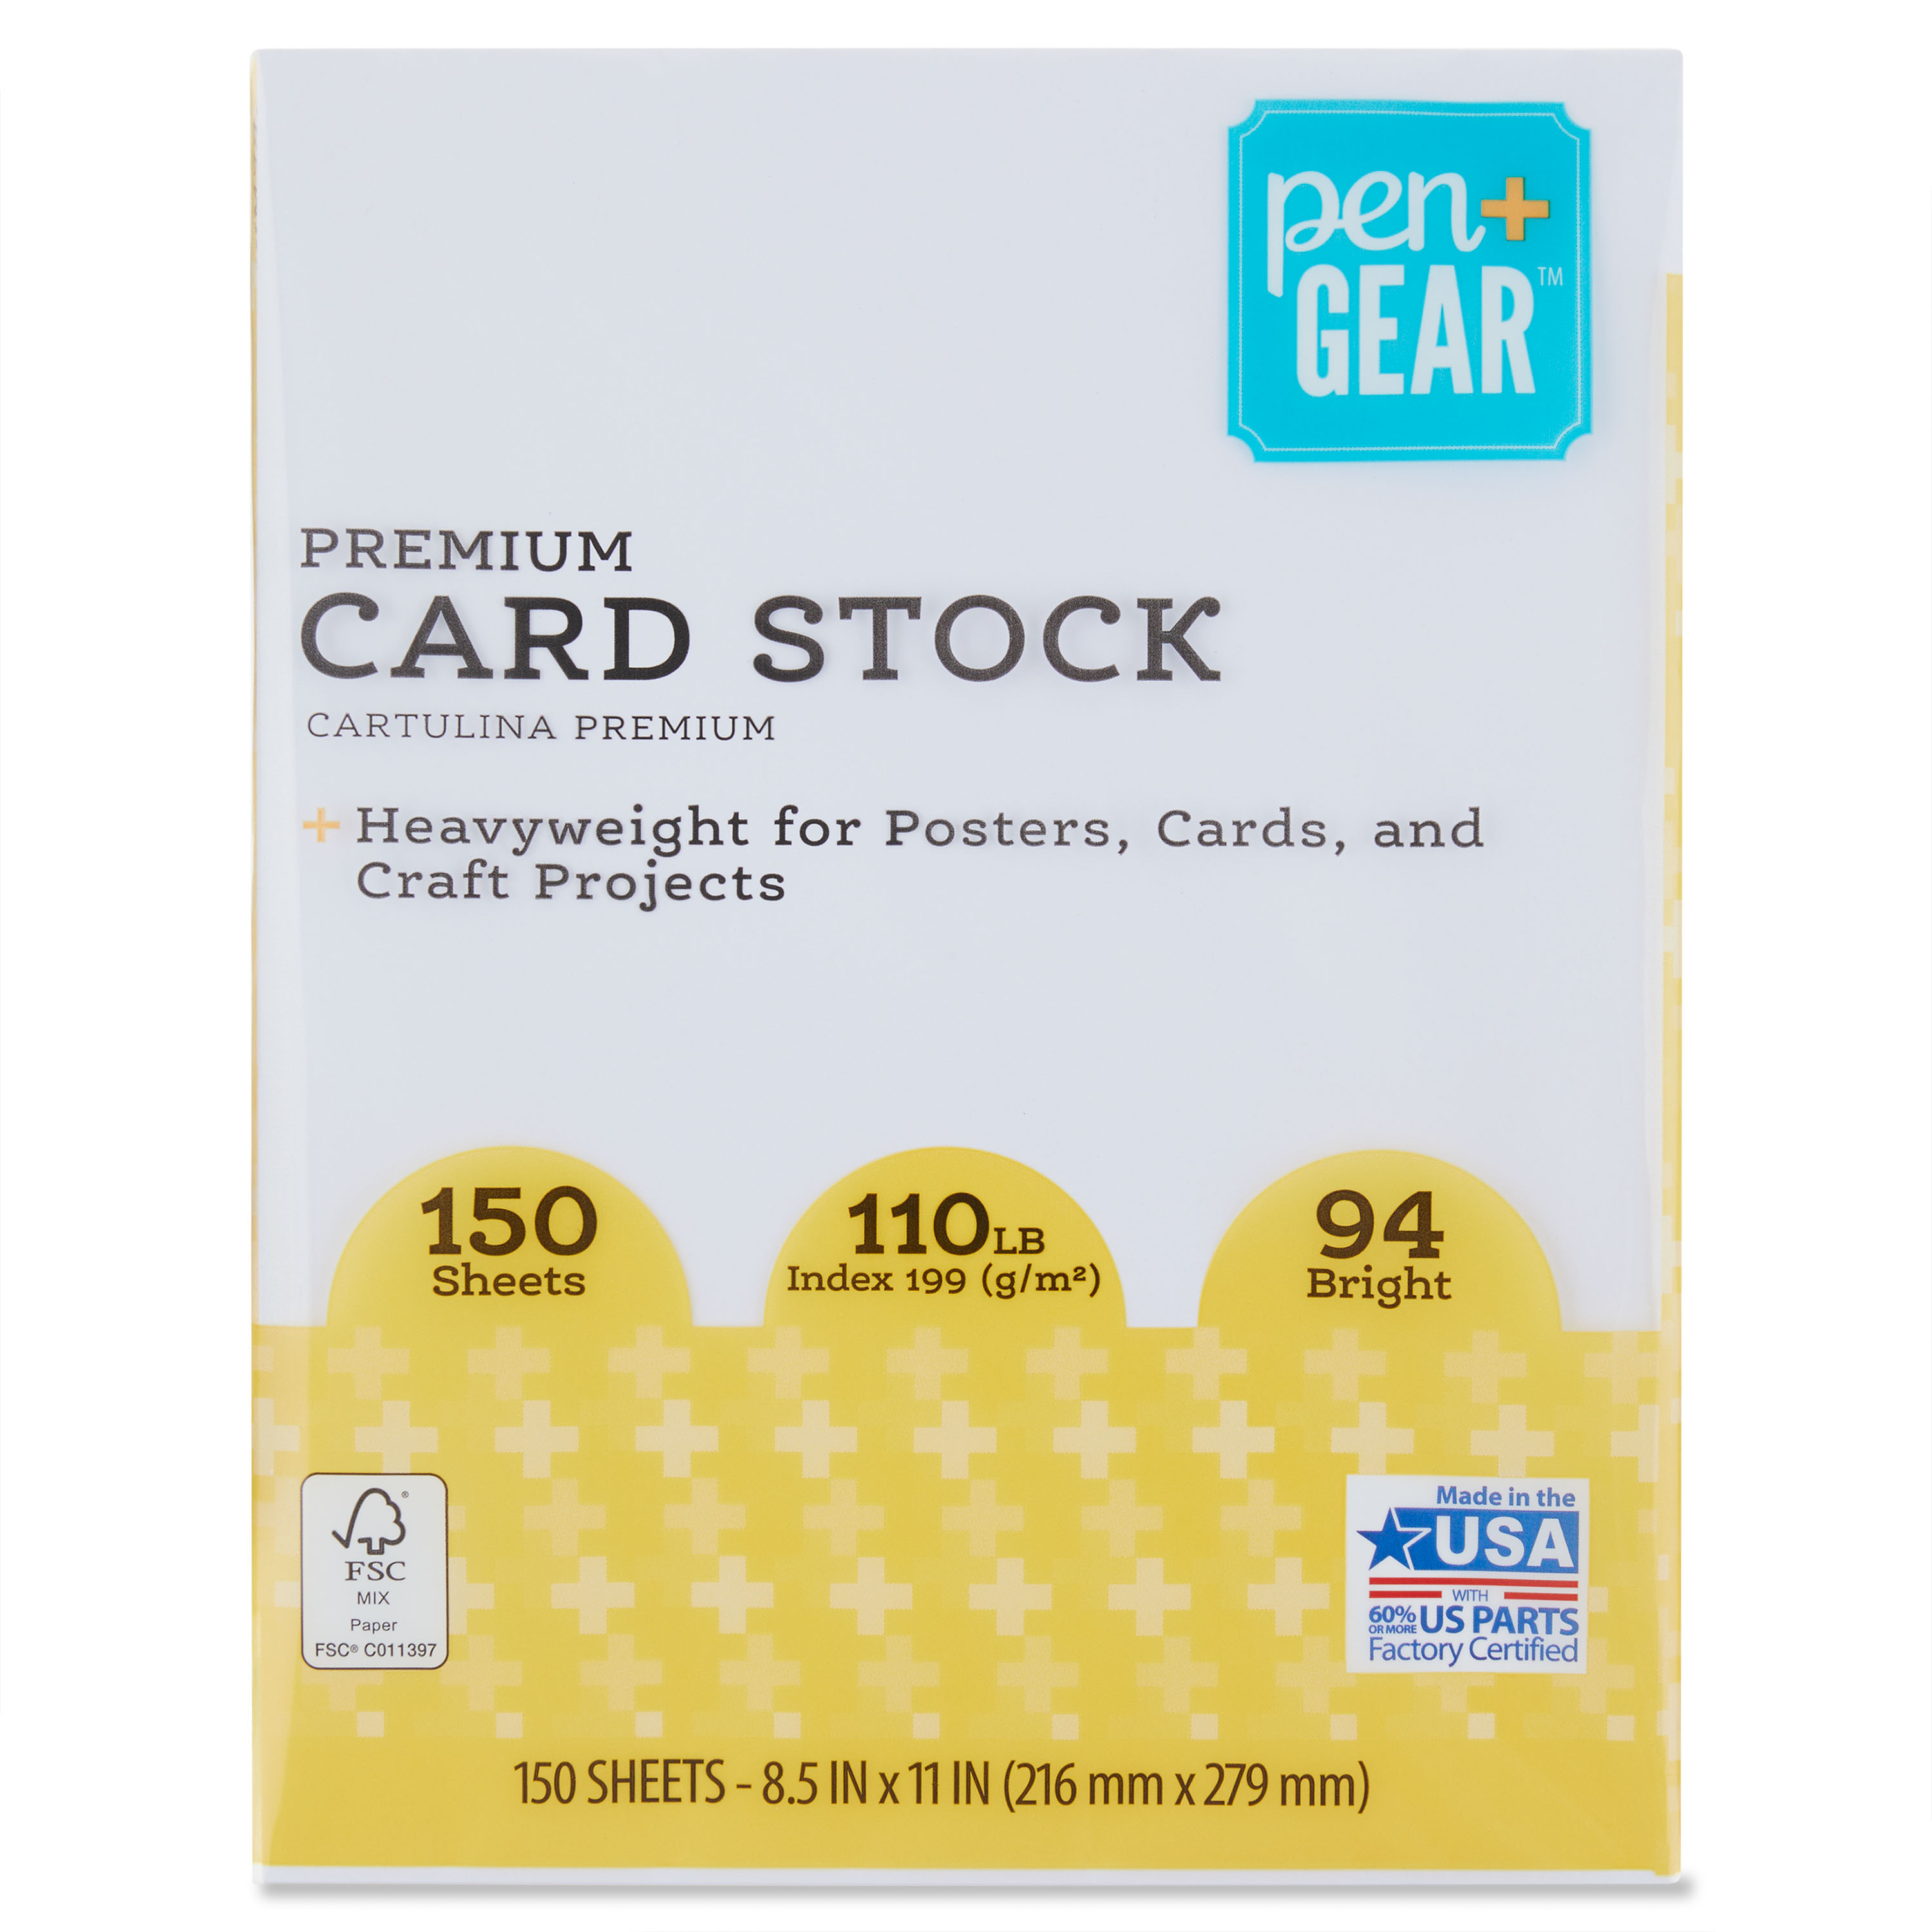 Pen+gear Premium Index Paper - White - 8.5 x 11 in